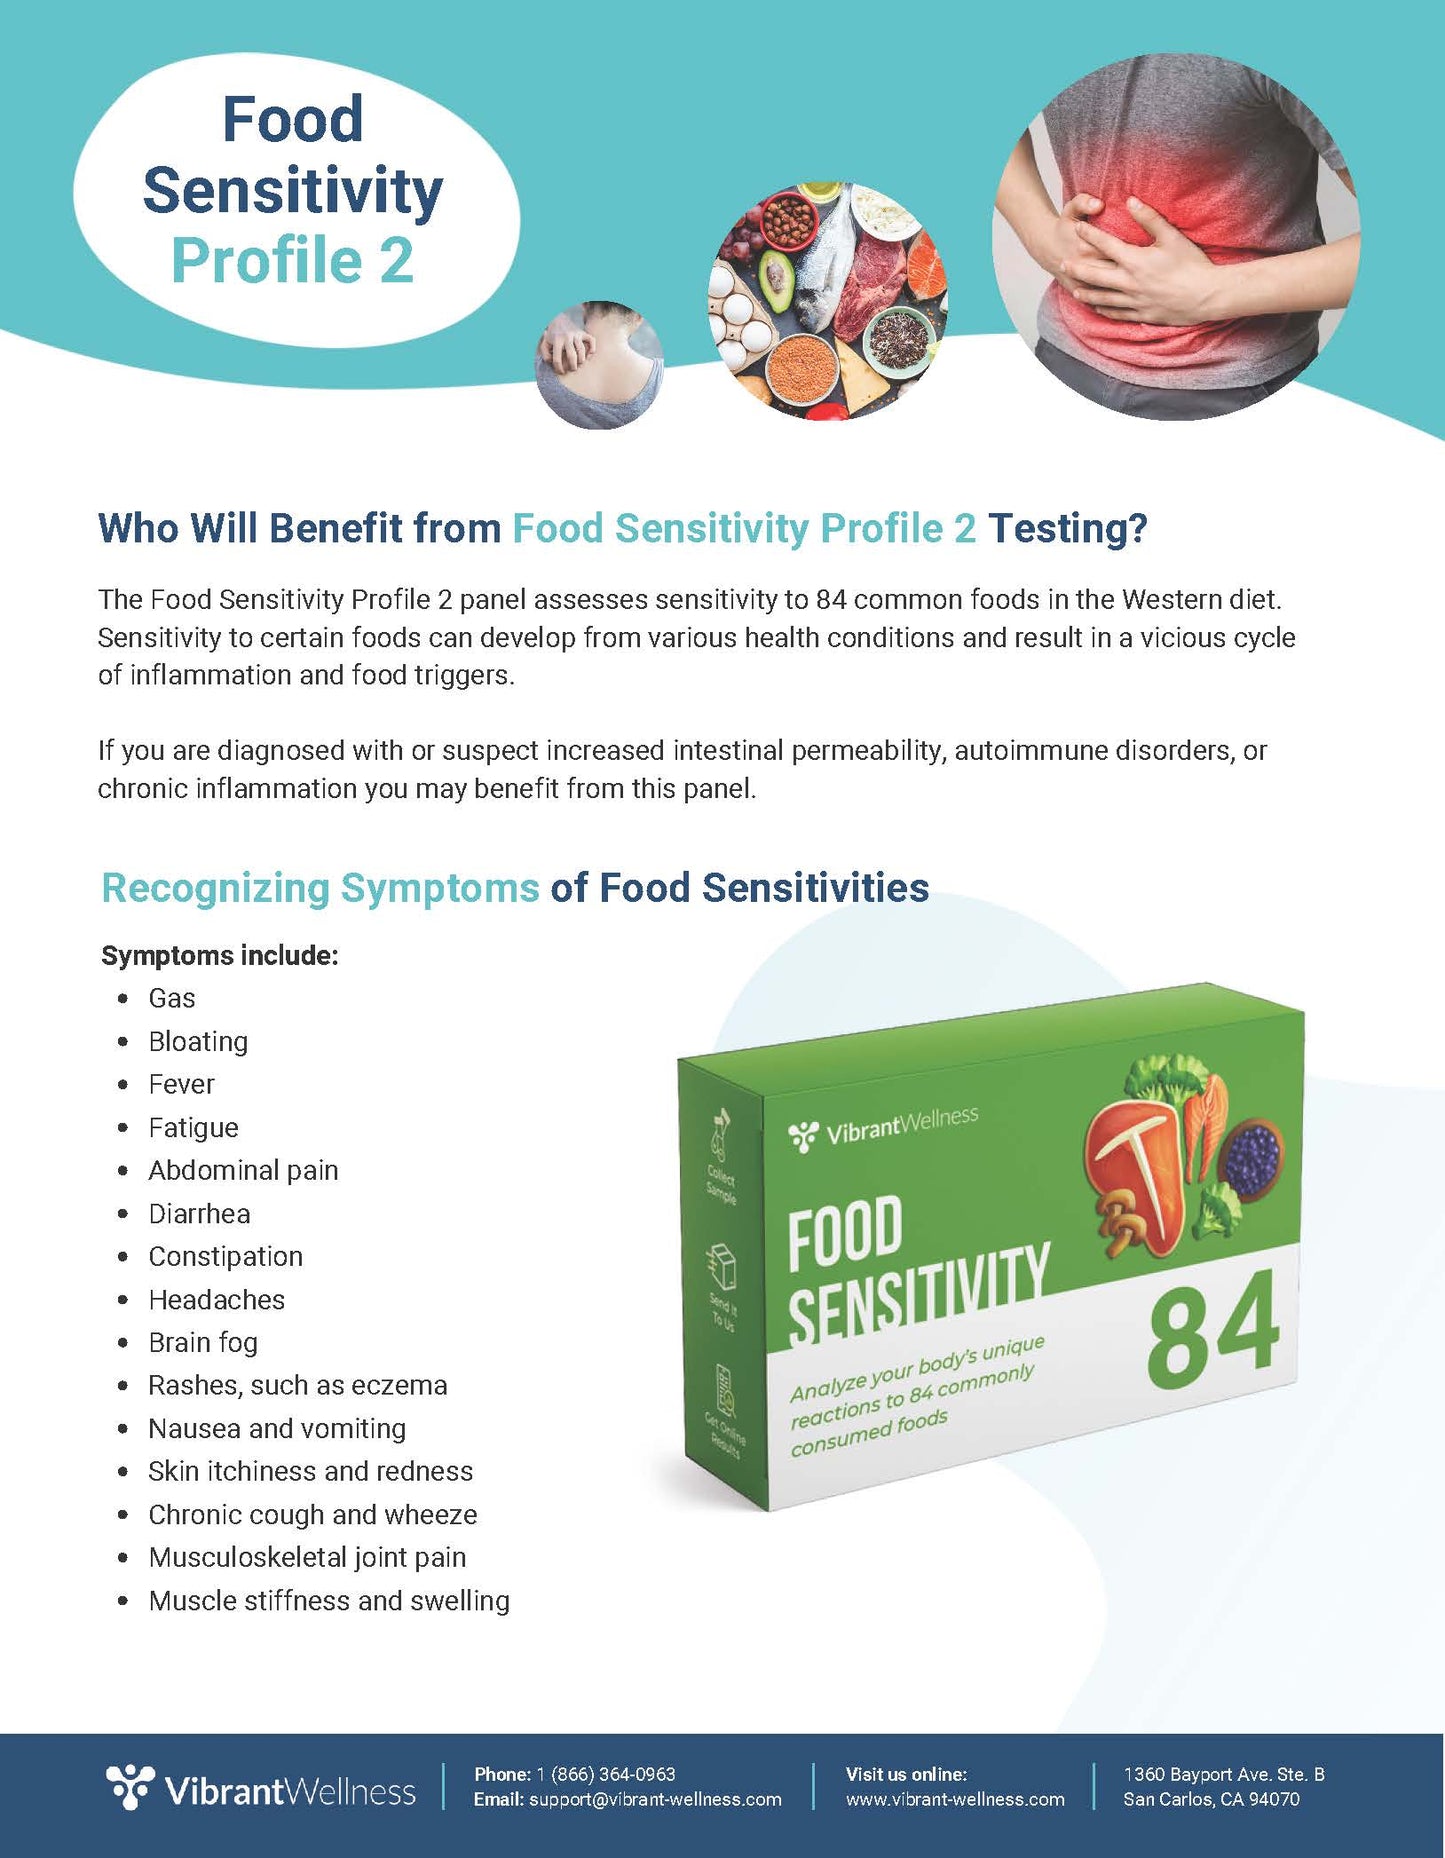 Food Sensitivity - Profile 2